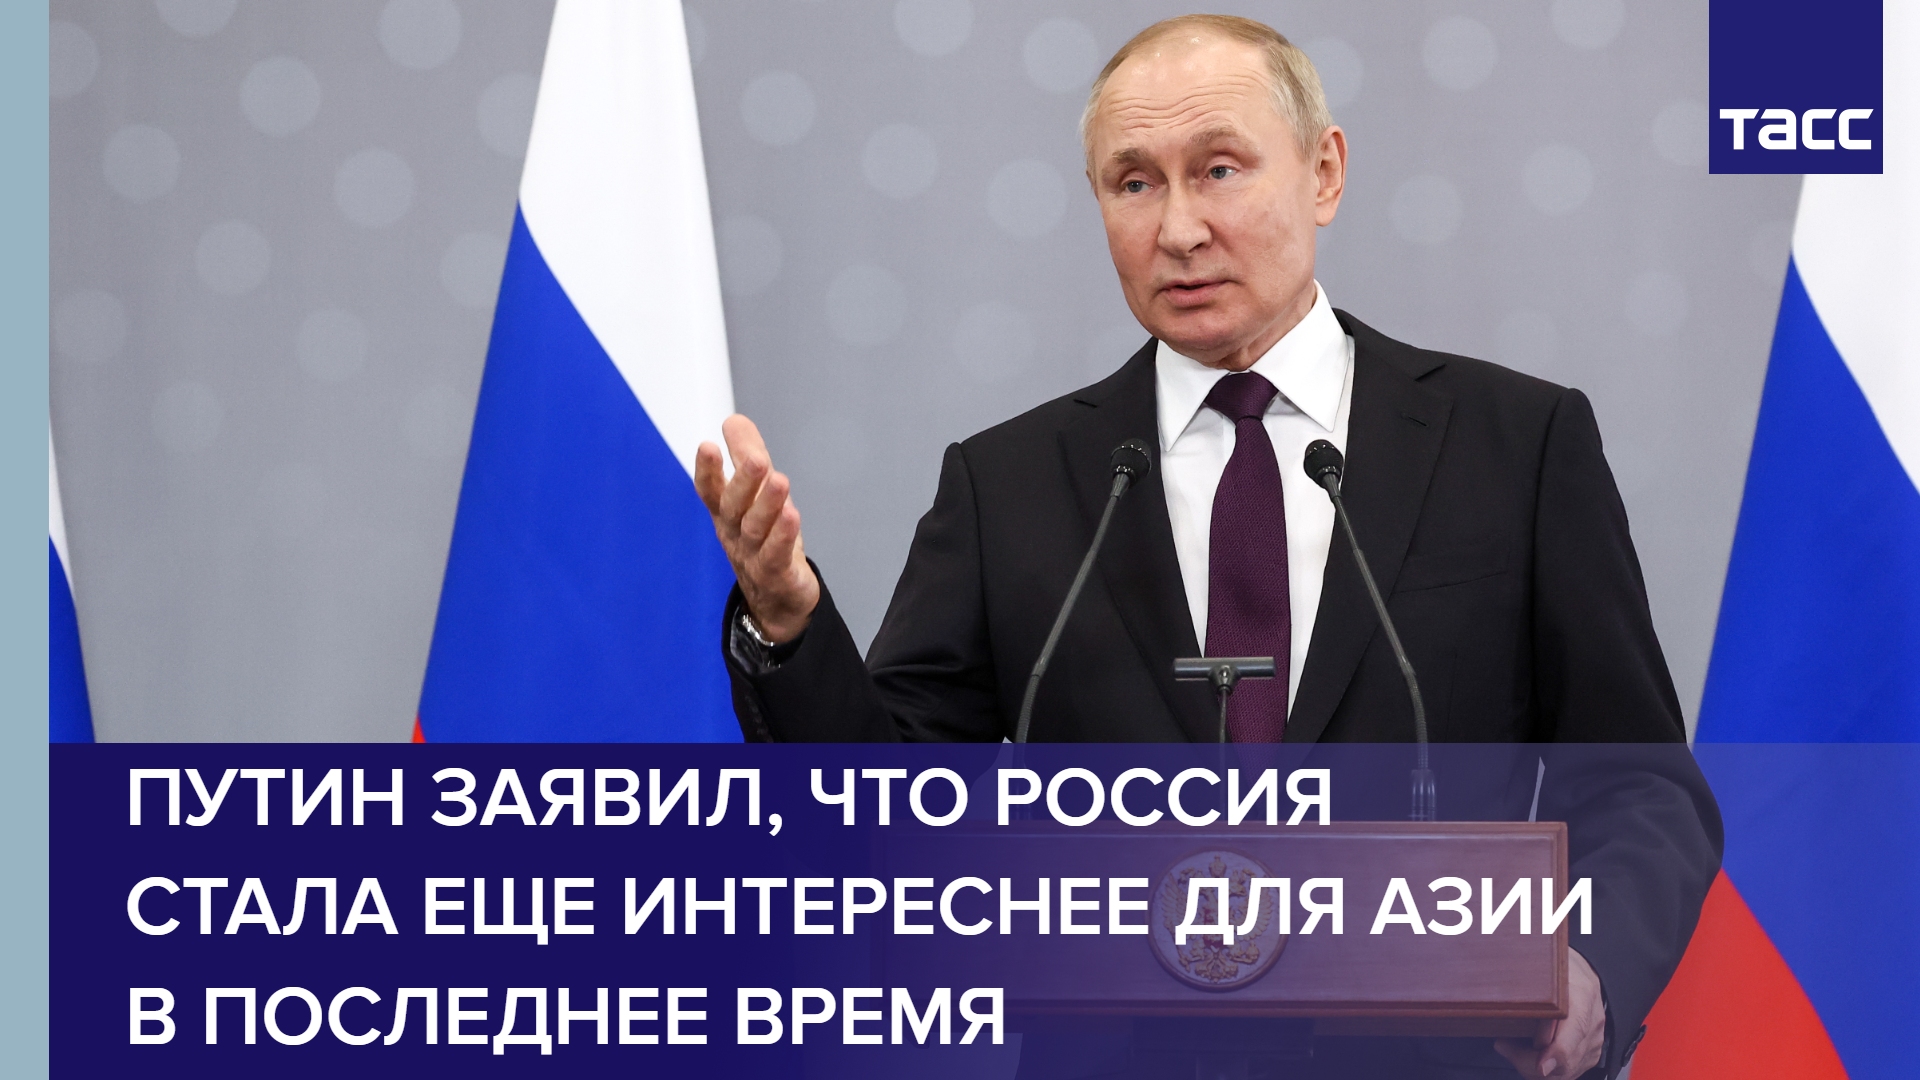 Путин заявил, что Россия стала еще интереснее для Азии в последнее время